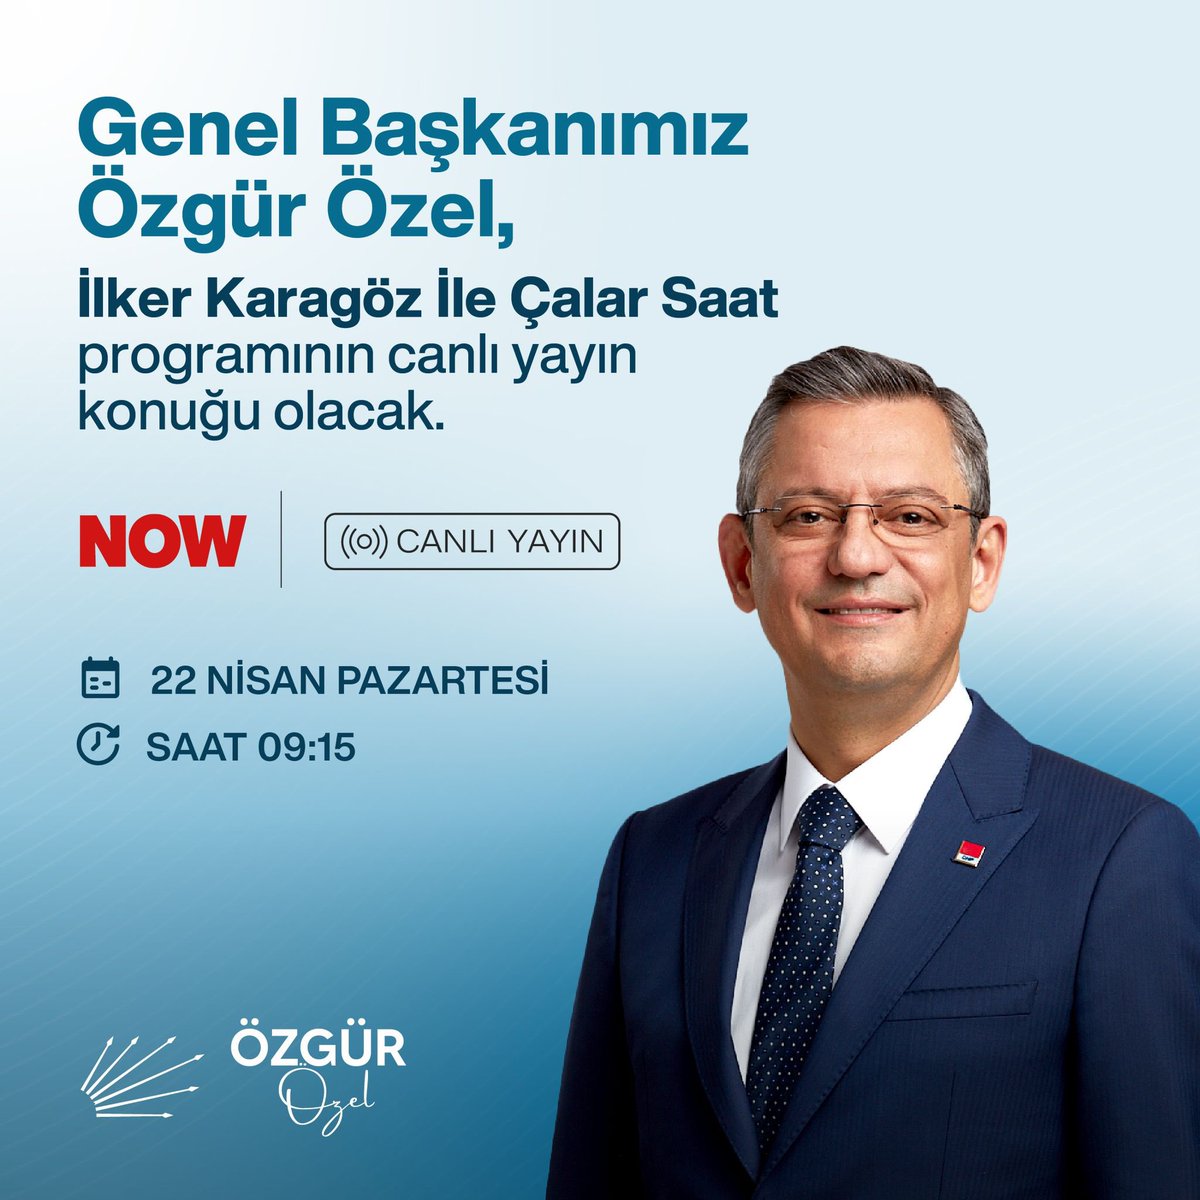 Genel Başkanımız Sayın Özgür Özel, yarın Now TV ekranlarında İlker Karagöz'ün sorularını yanıtlayacak. 🗓️22 Nisan Pazartesi ⏰ 09.15